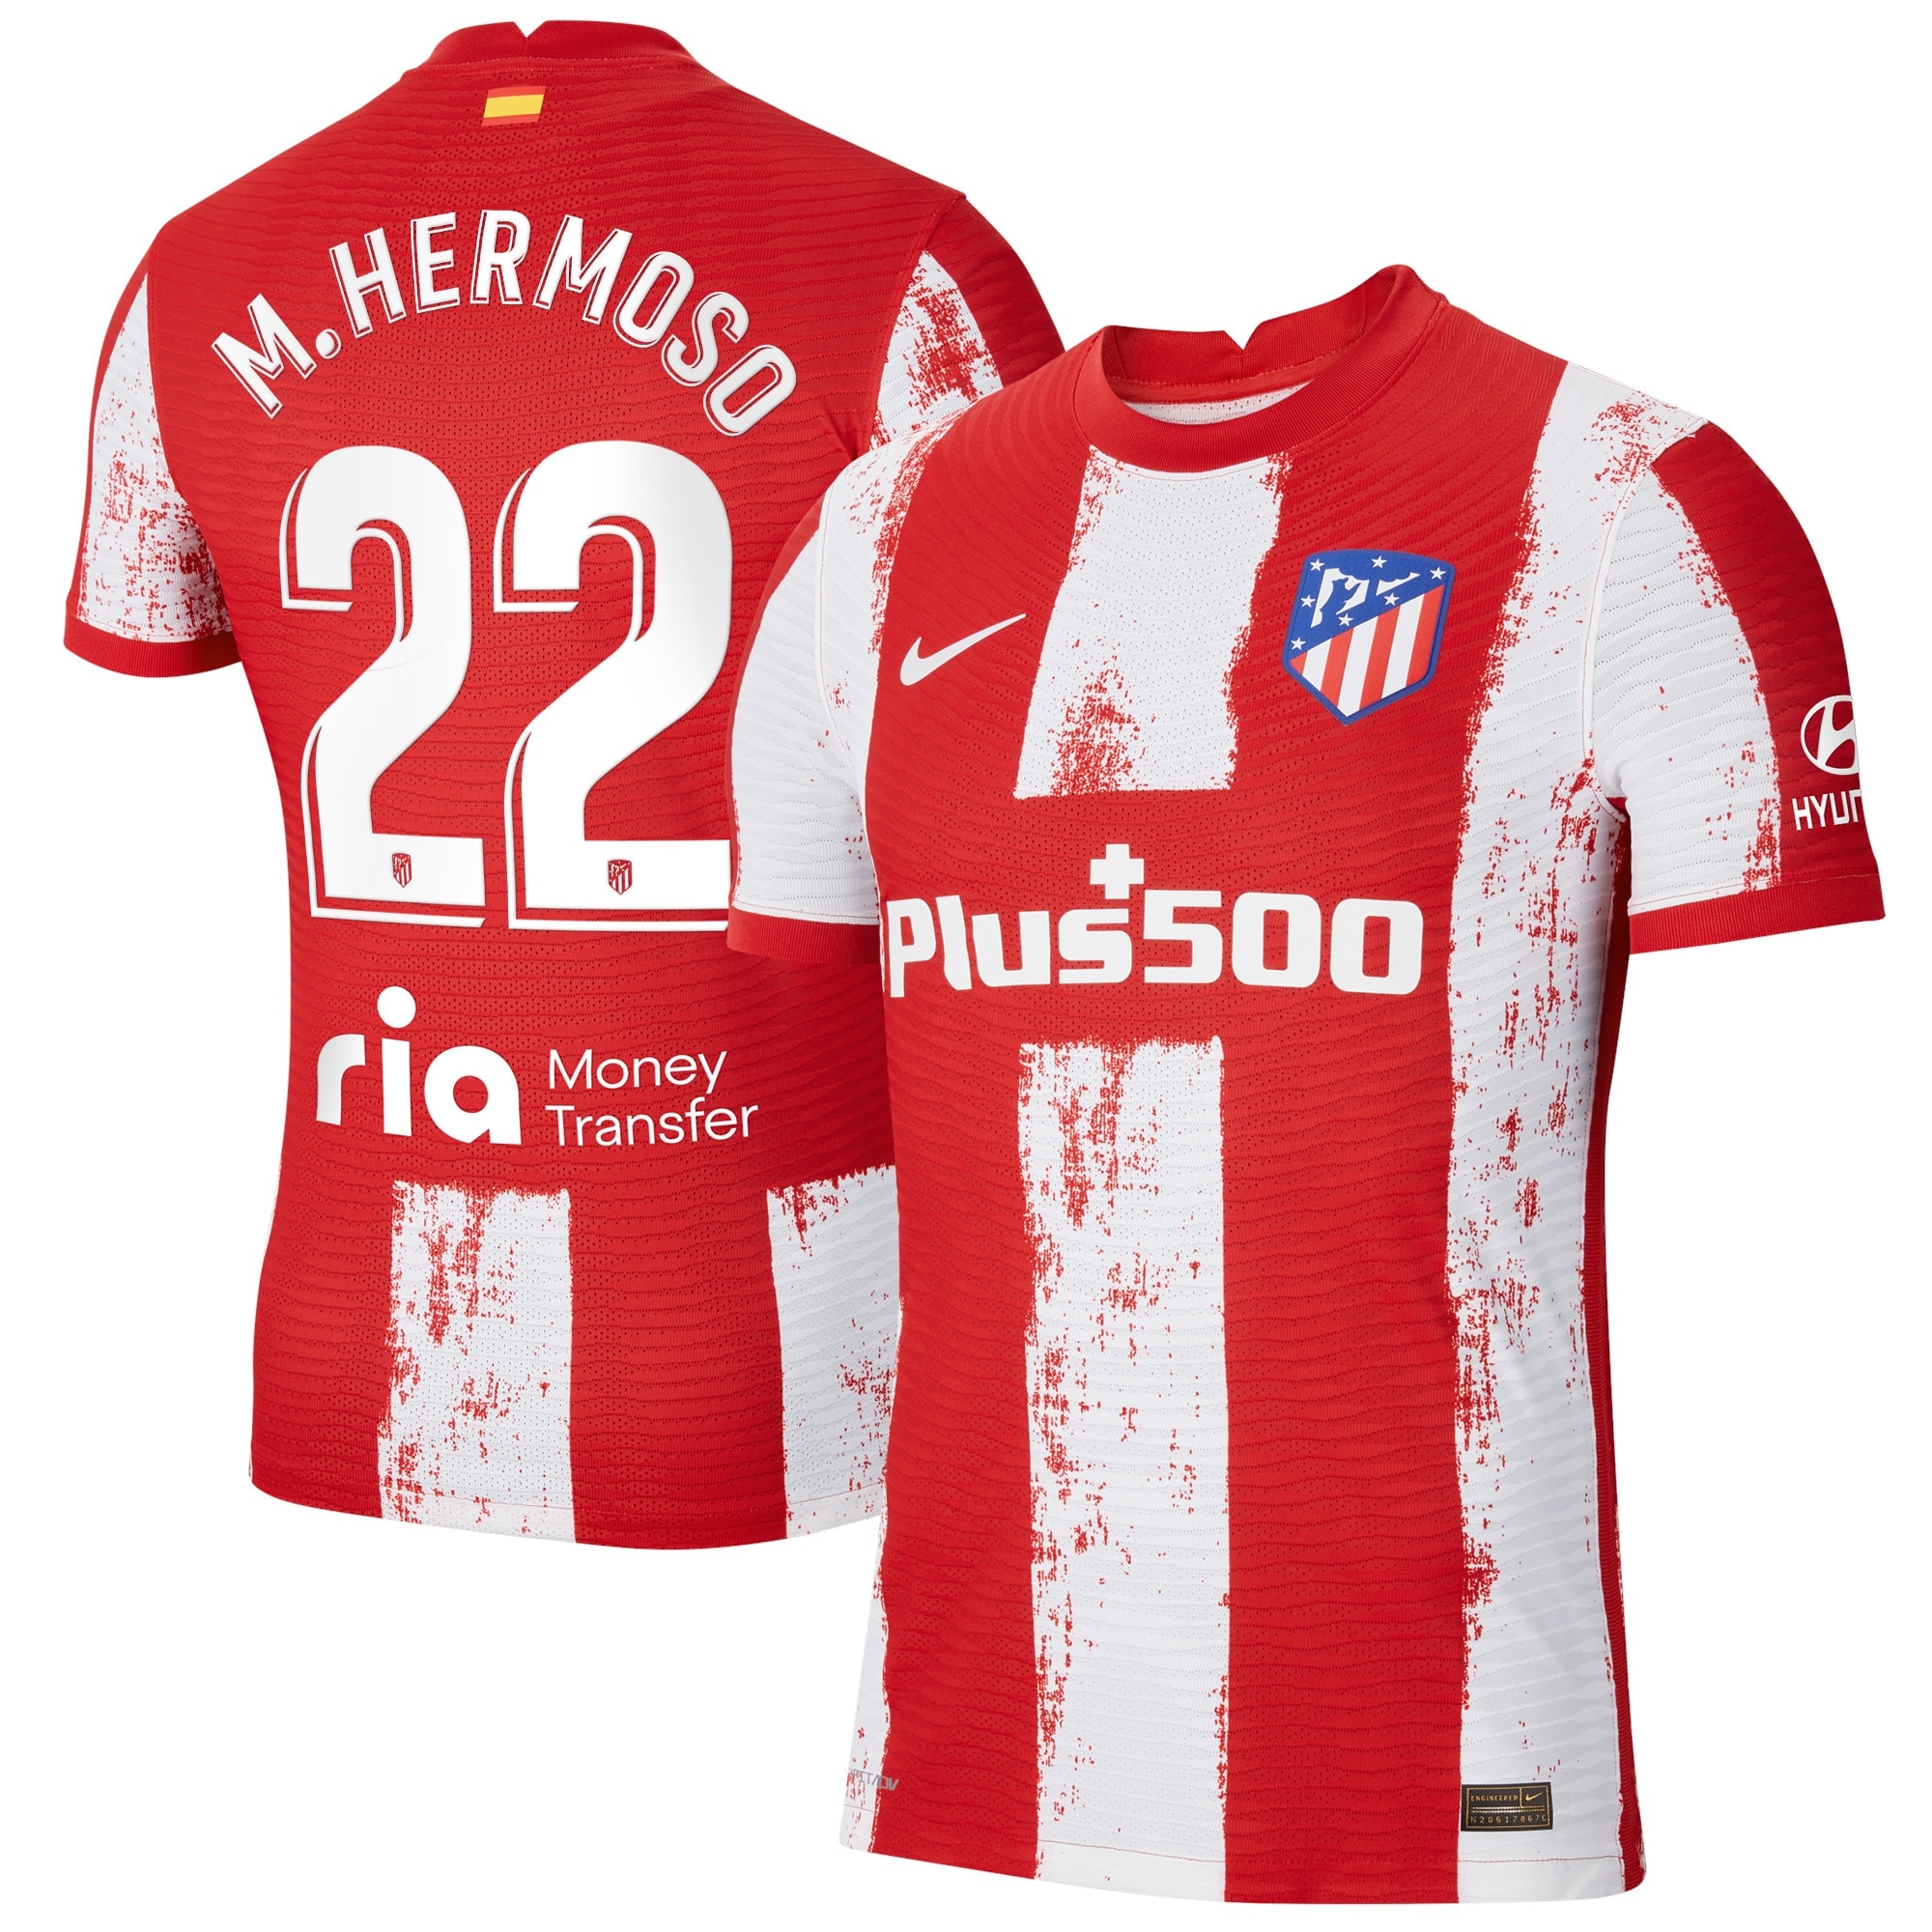 Atlético de Madrid Home Vapor Match Shirt 2021-22 with M.Hermoso 22 printing